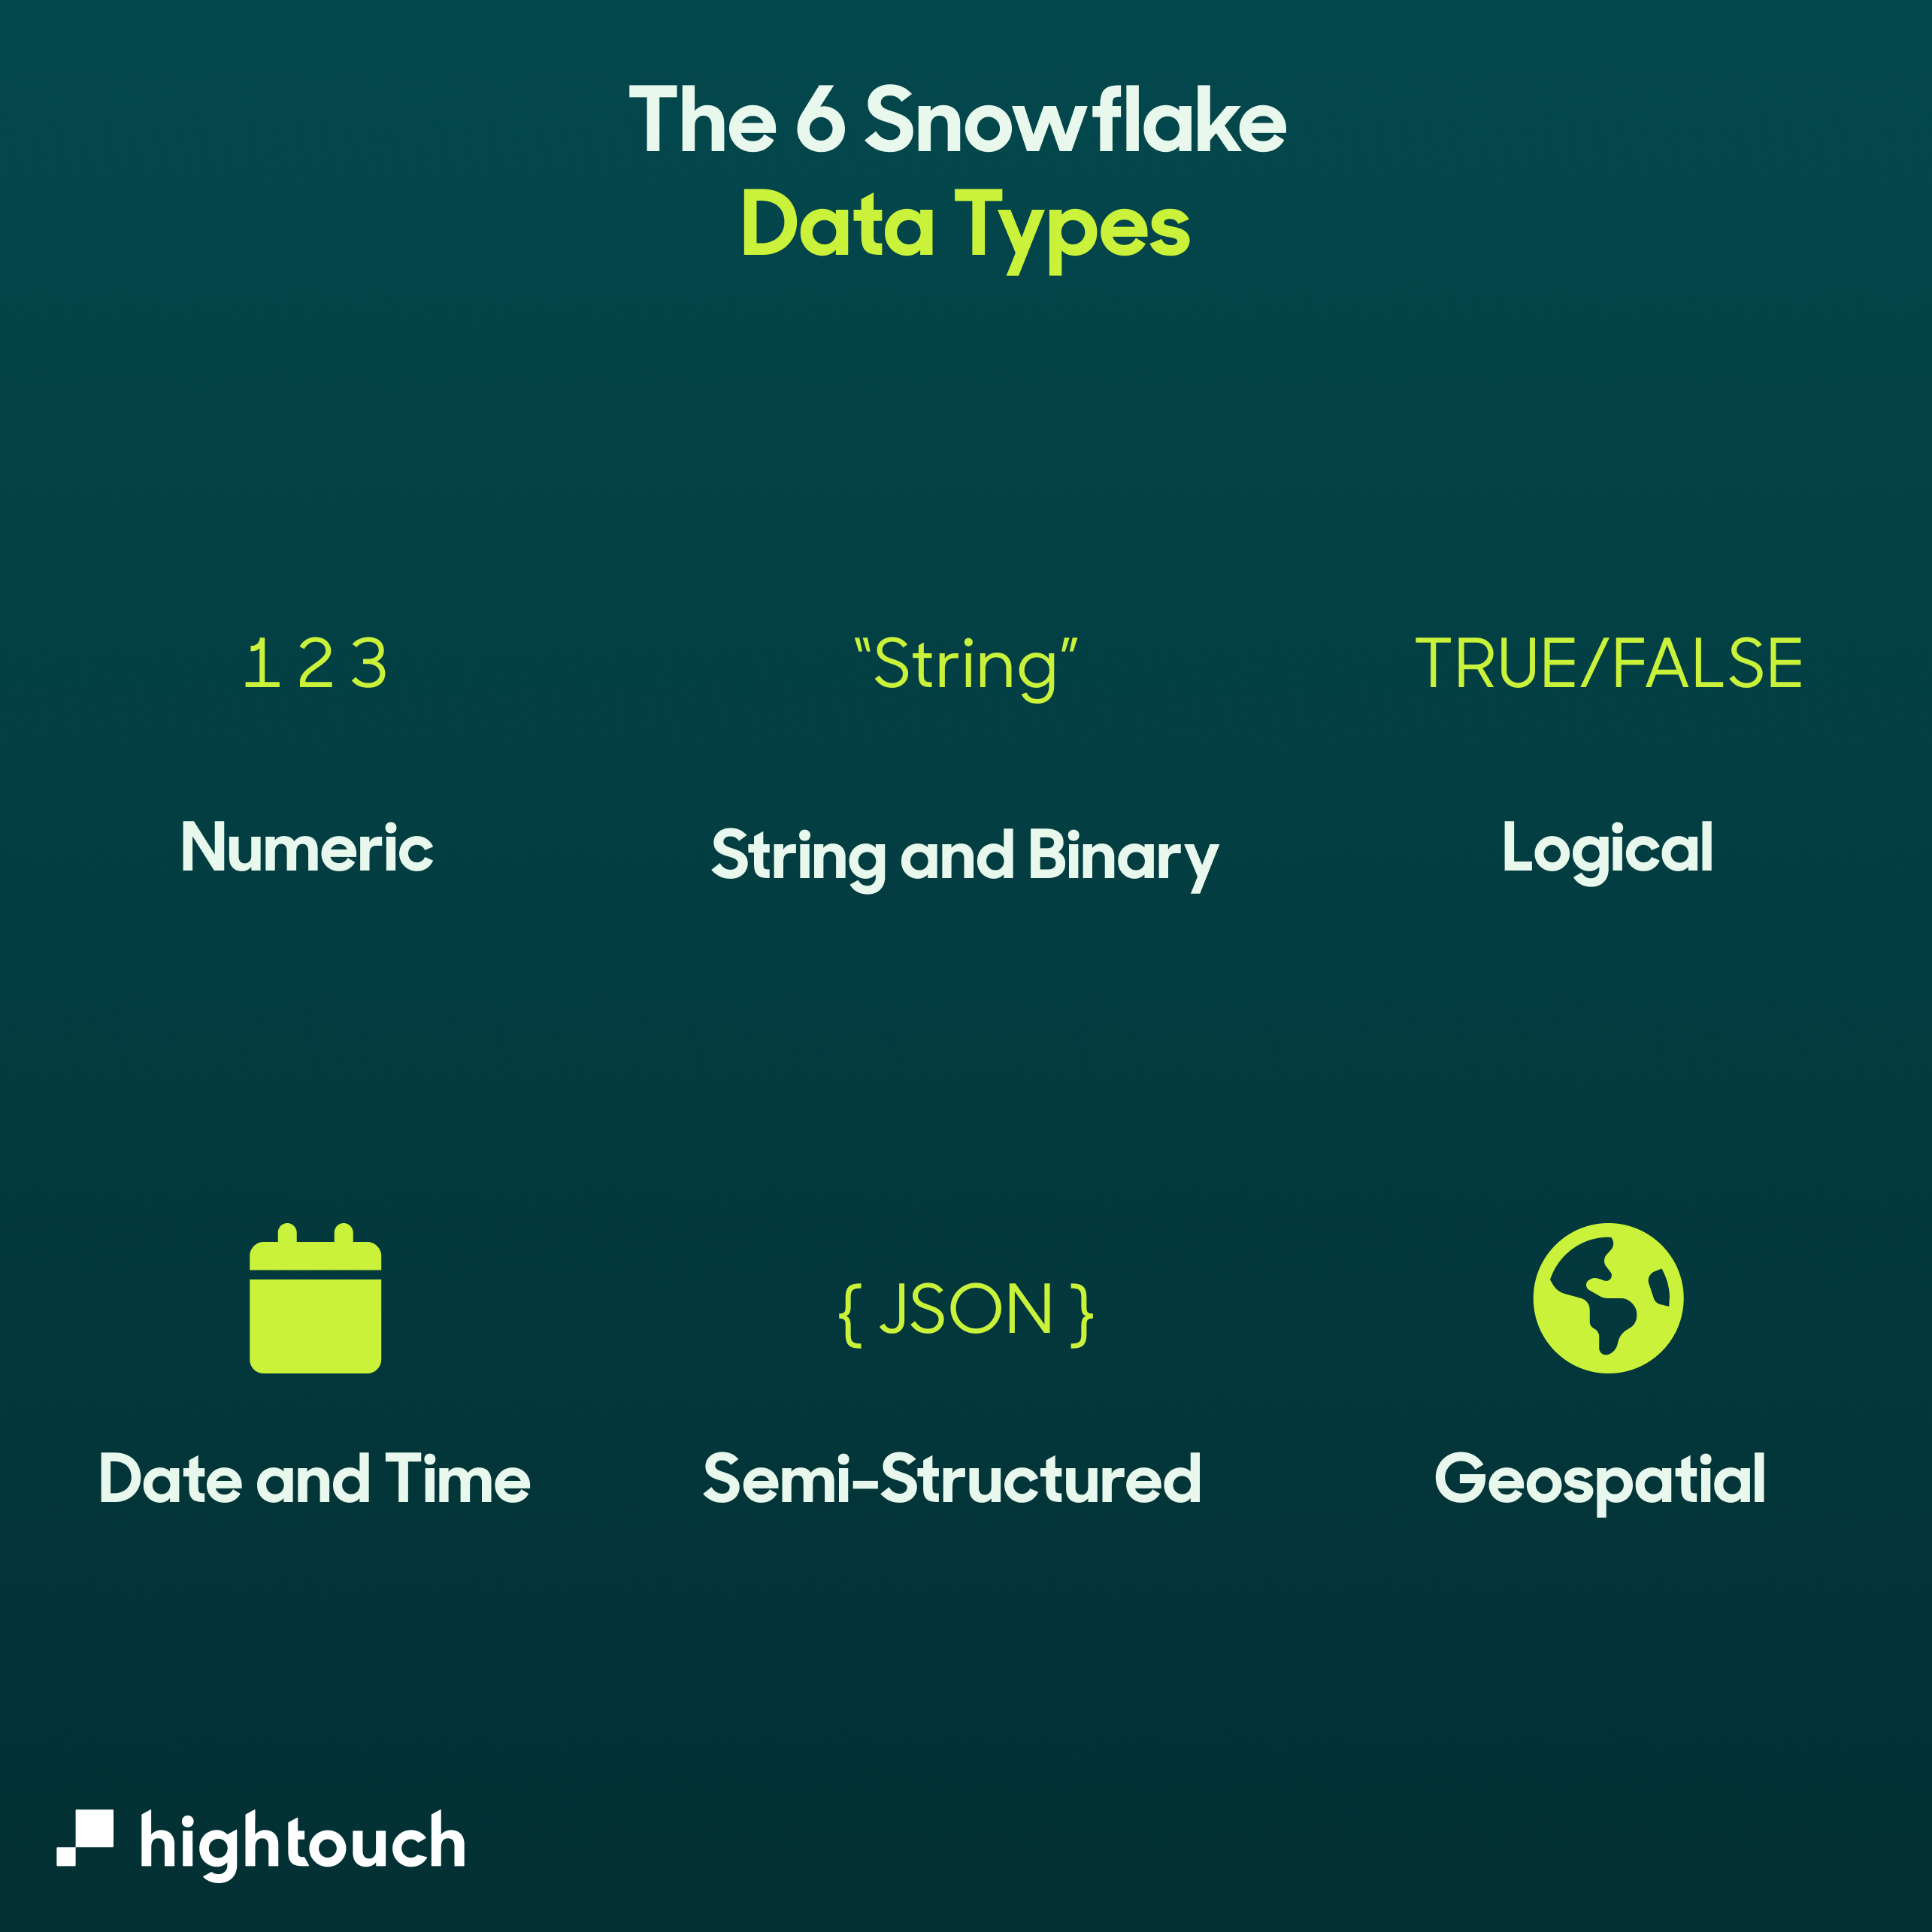 The 6 snowflake data types.